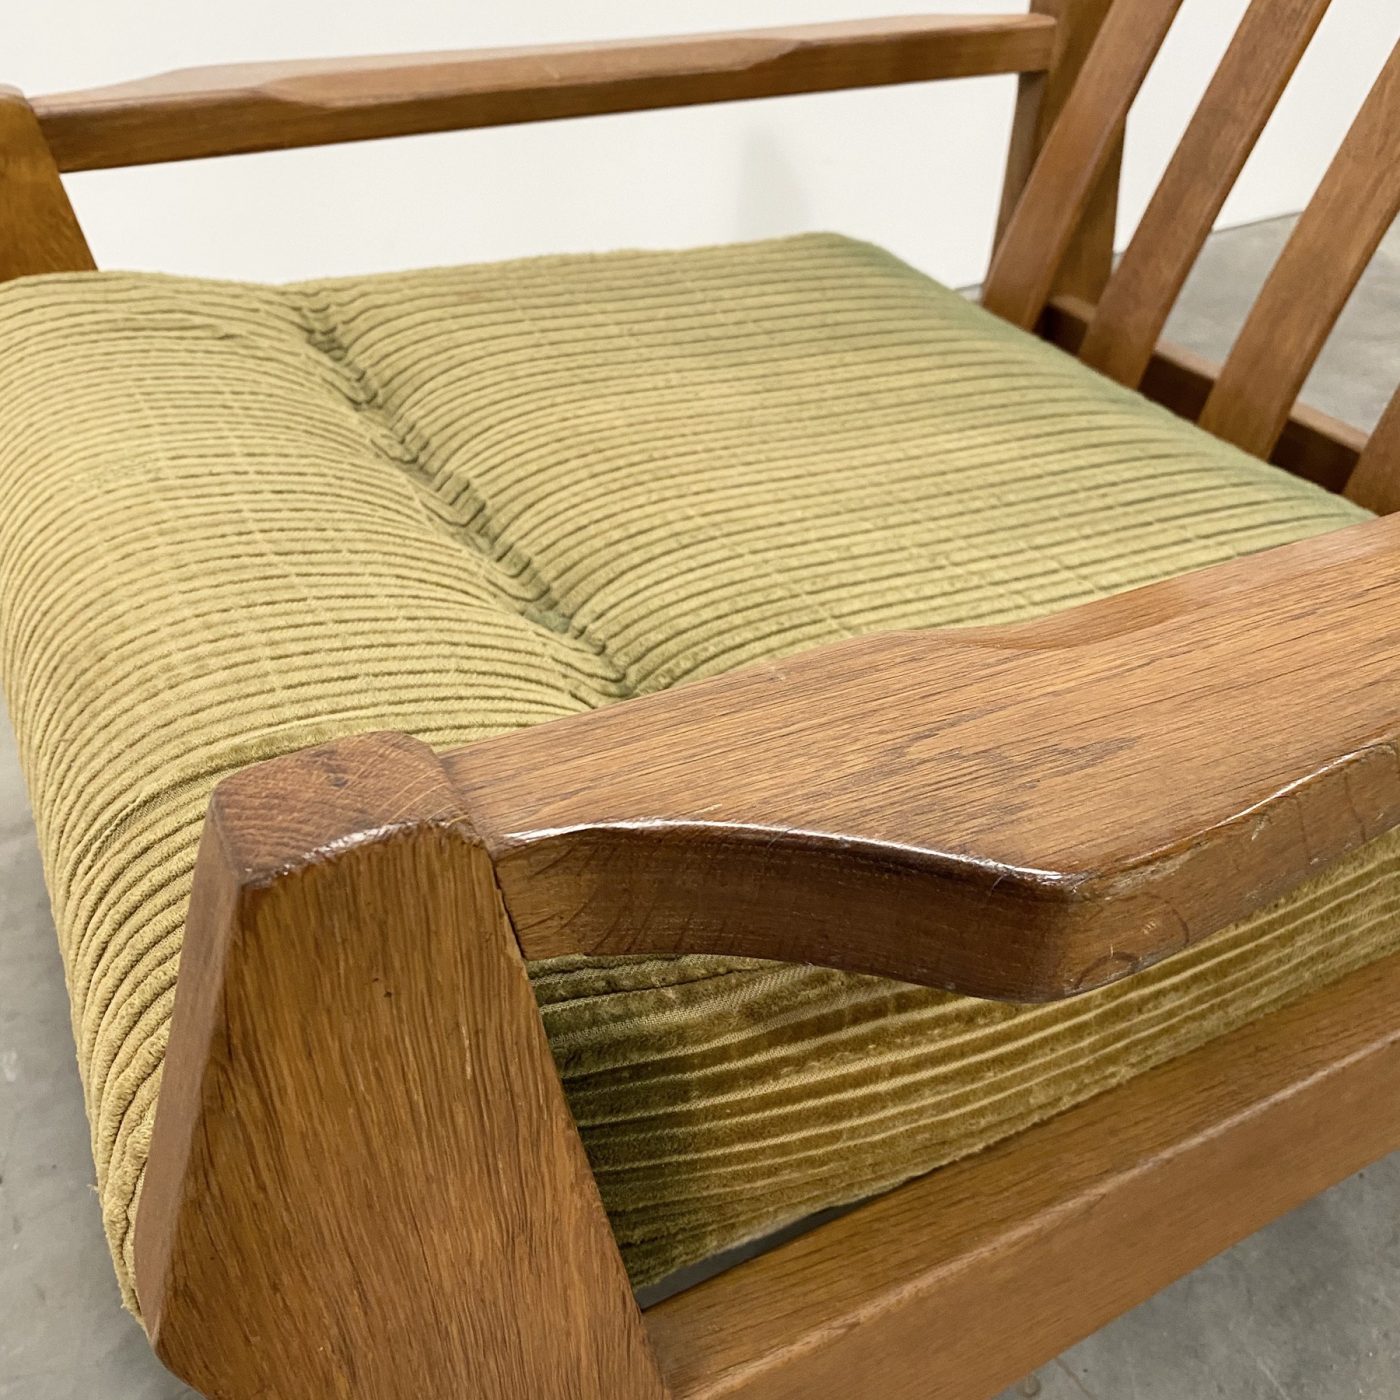 objet-vagabond-oak-armchairs0000